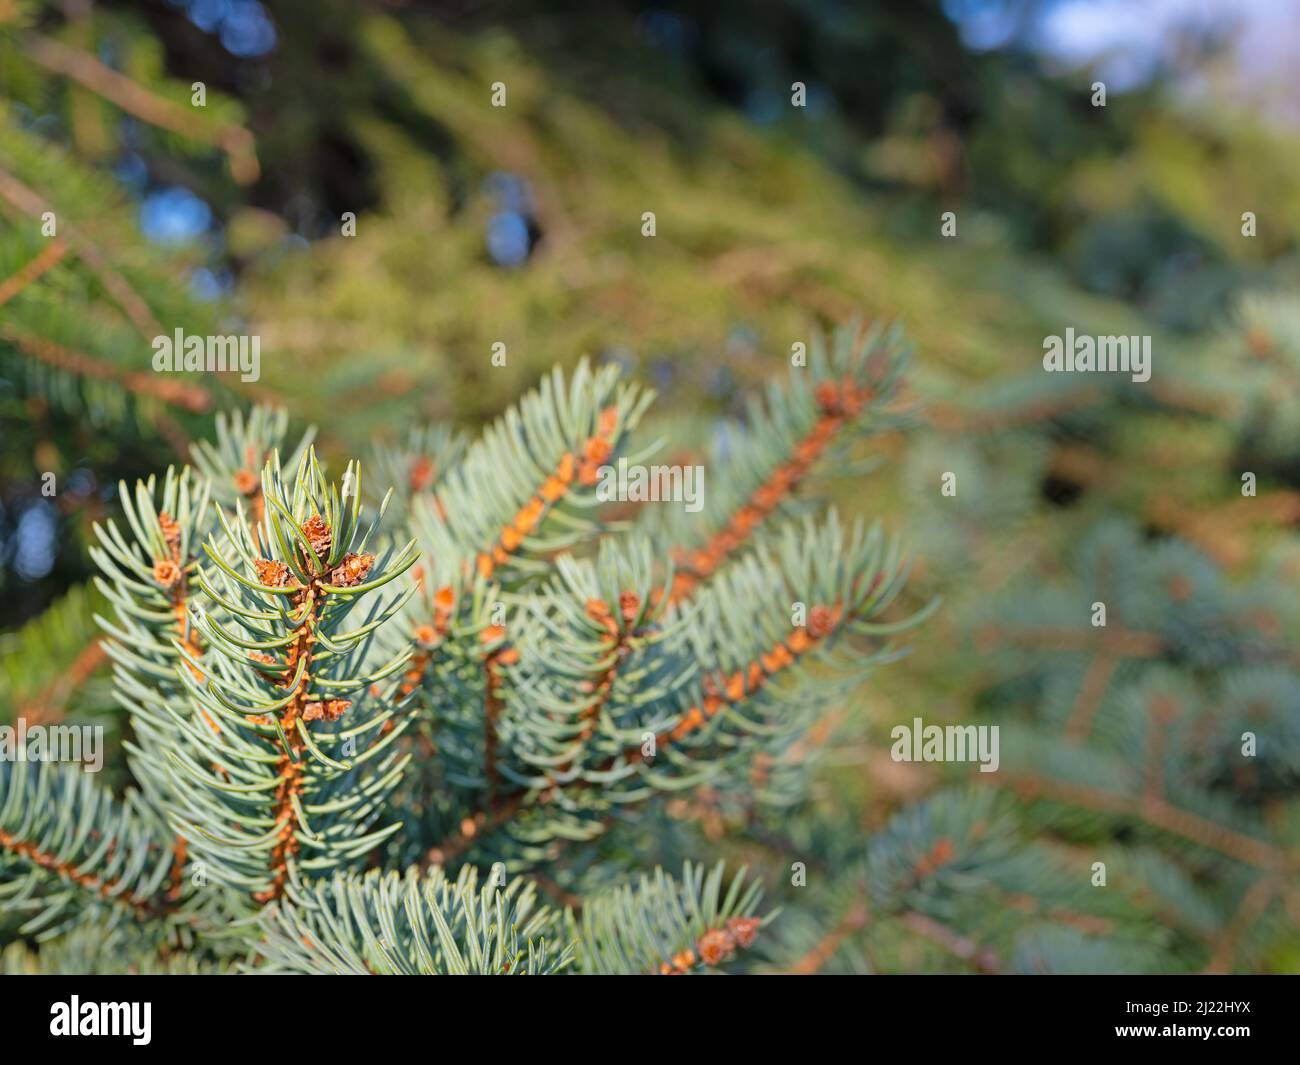 Serbian blue spruce in a closeup Stock Photo